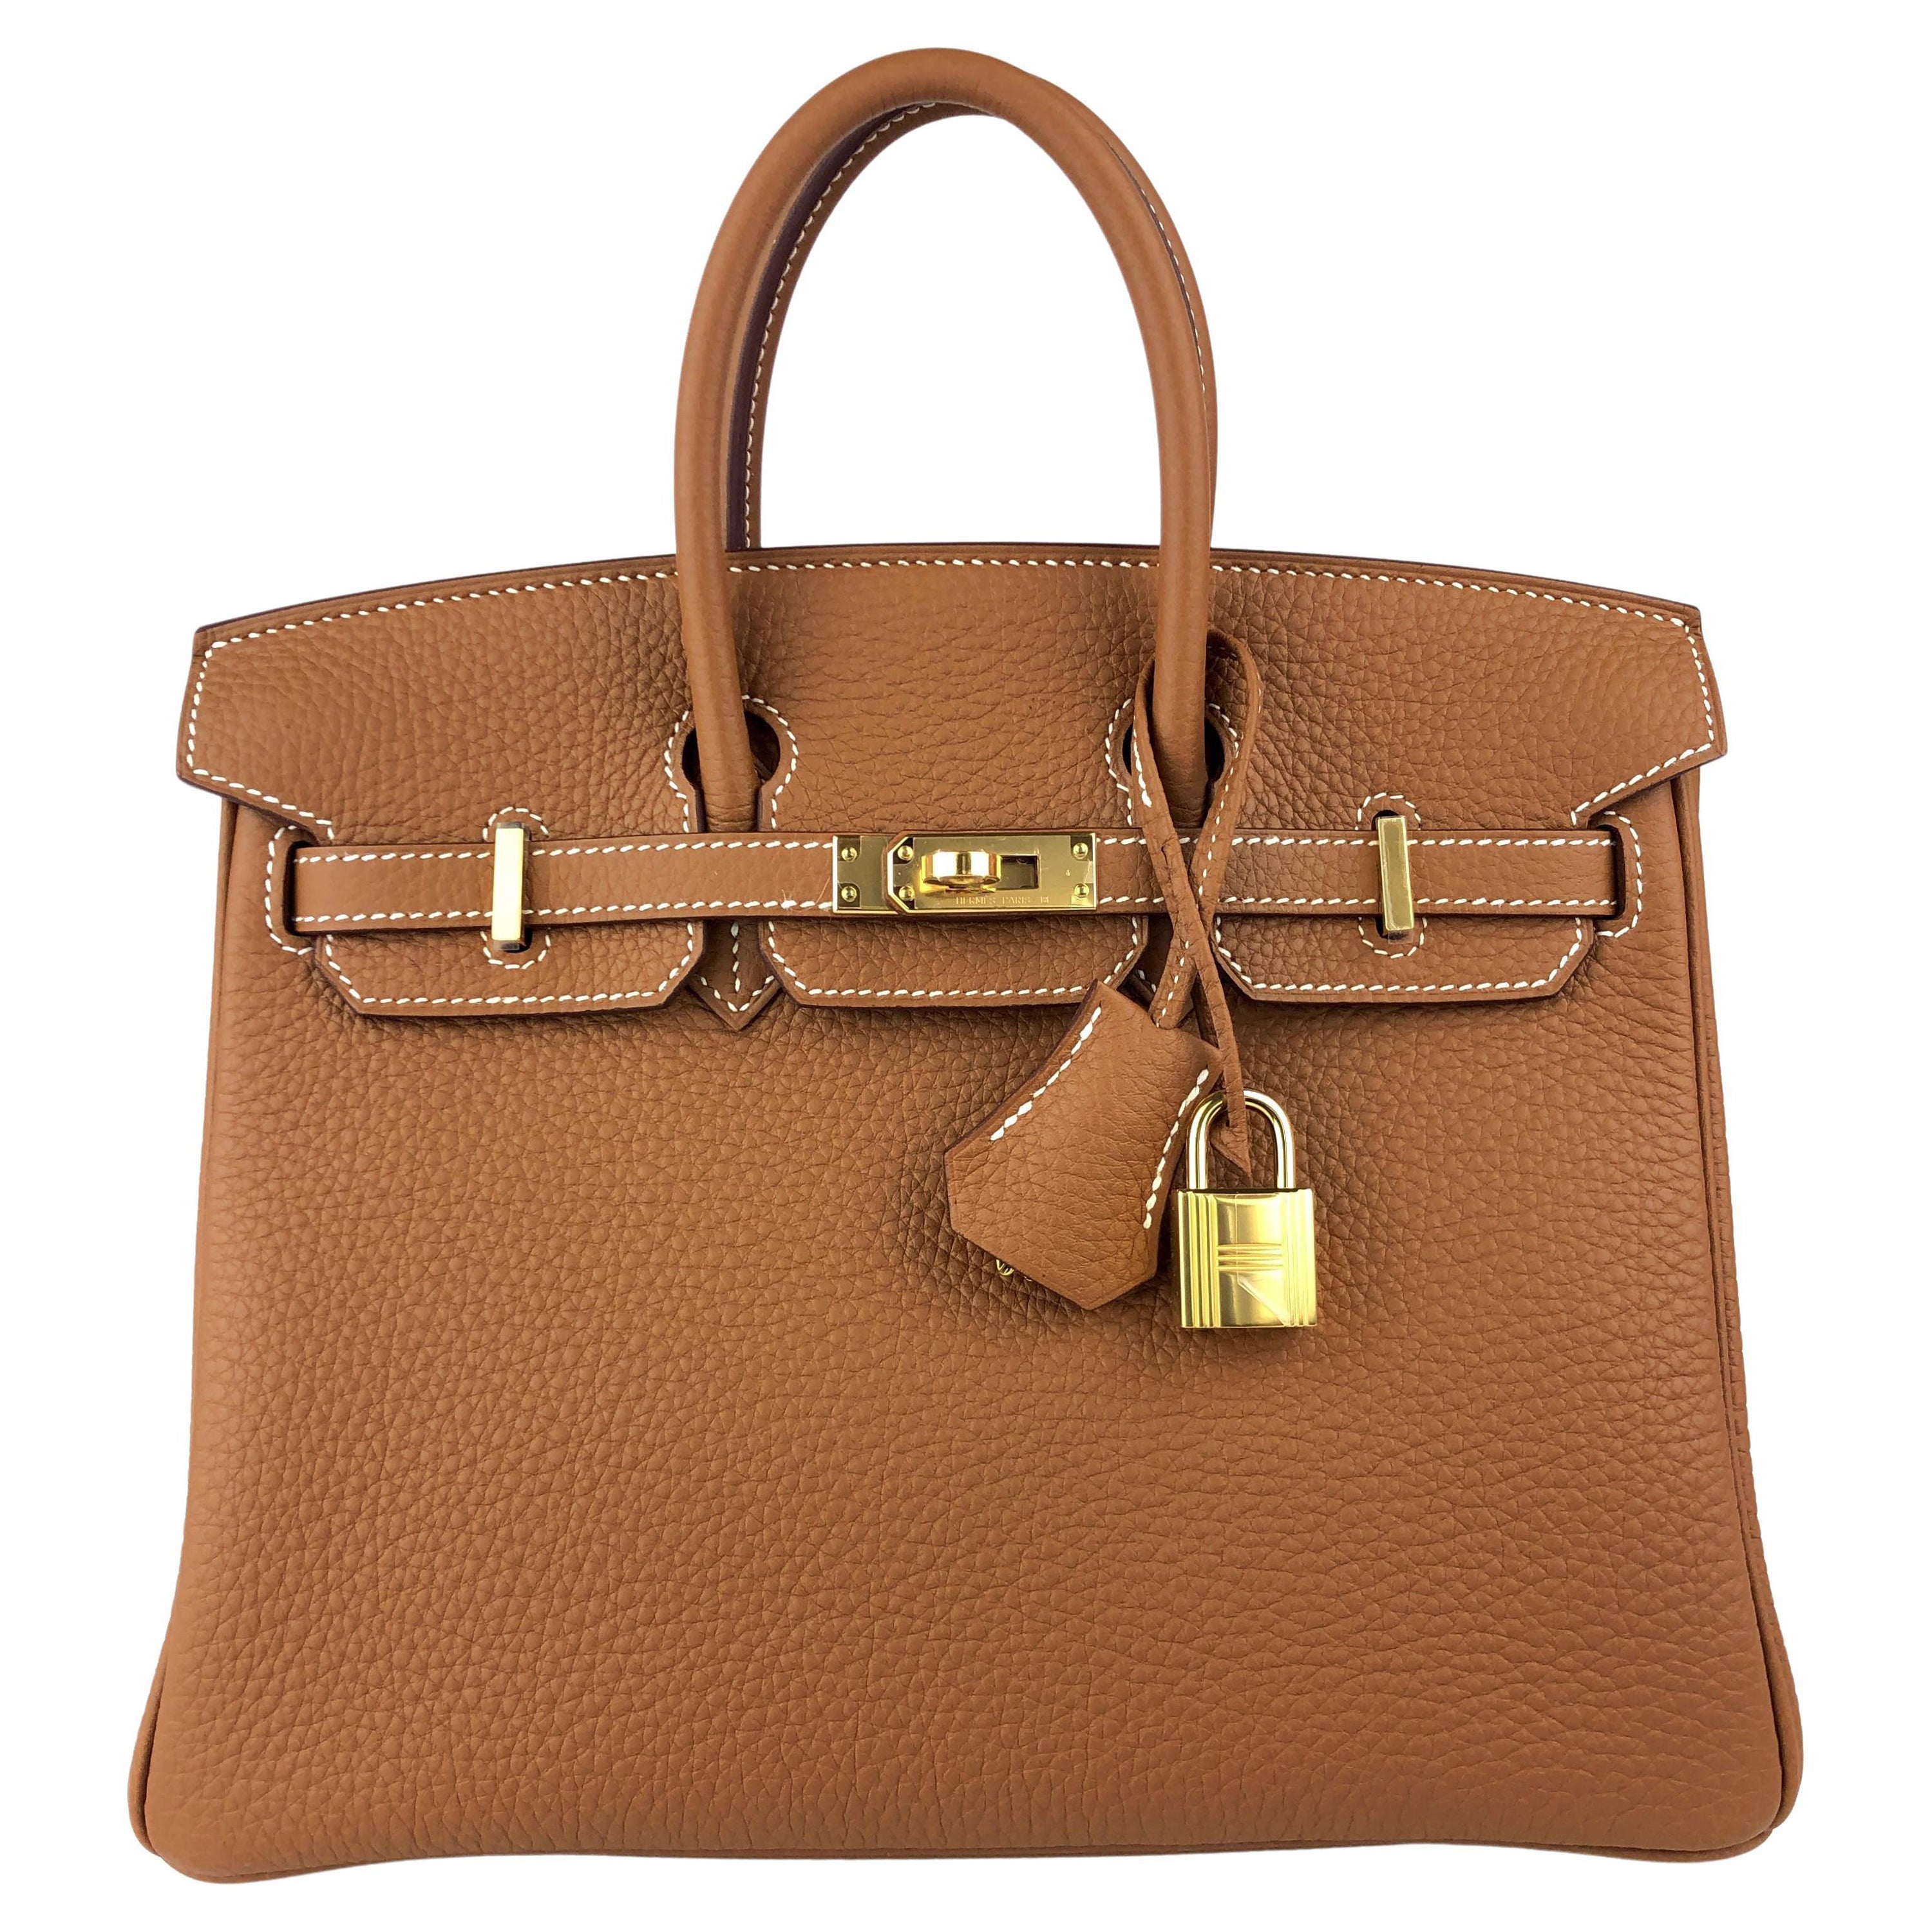 Hermes Birkin 25 Gold Tan Togo Leather Handbag Gold Hardware  For Sale